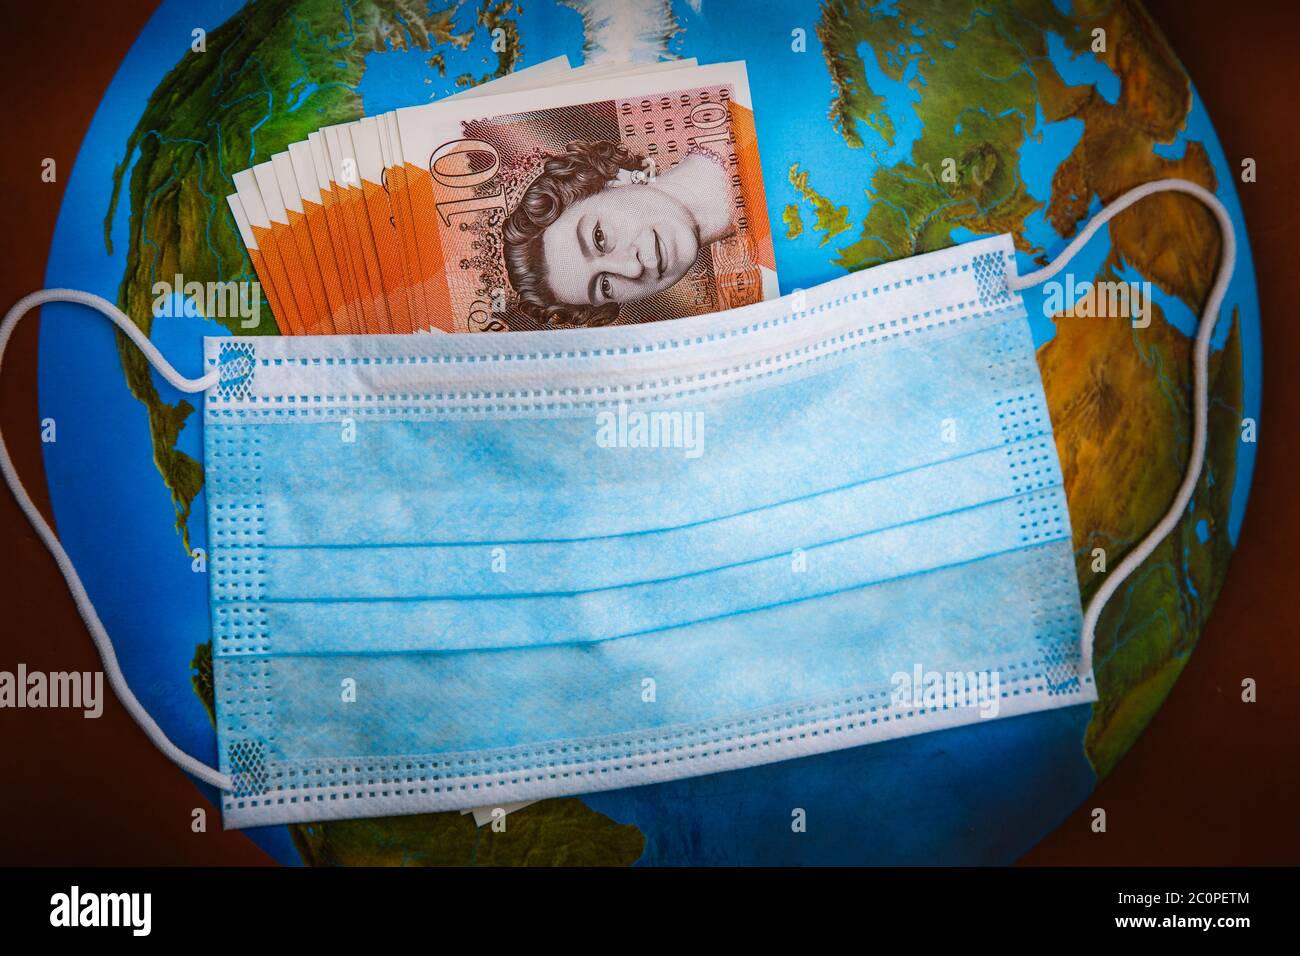 Globale Coronavirus-Pandemie und wirtschaftlicher Crash. Virus Facemask enthält britische Banknoten mit einem Hintergrund der Welt Stockfoto